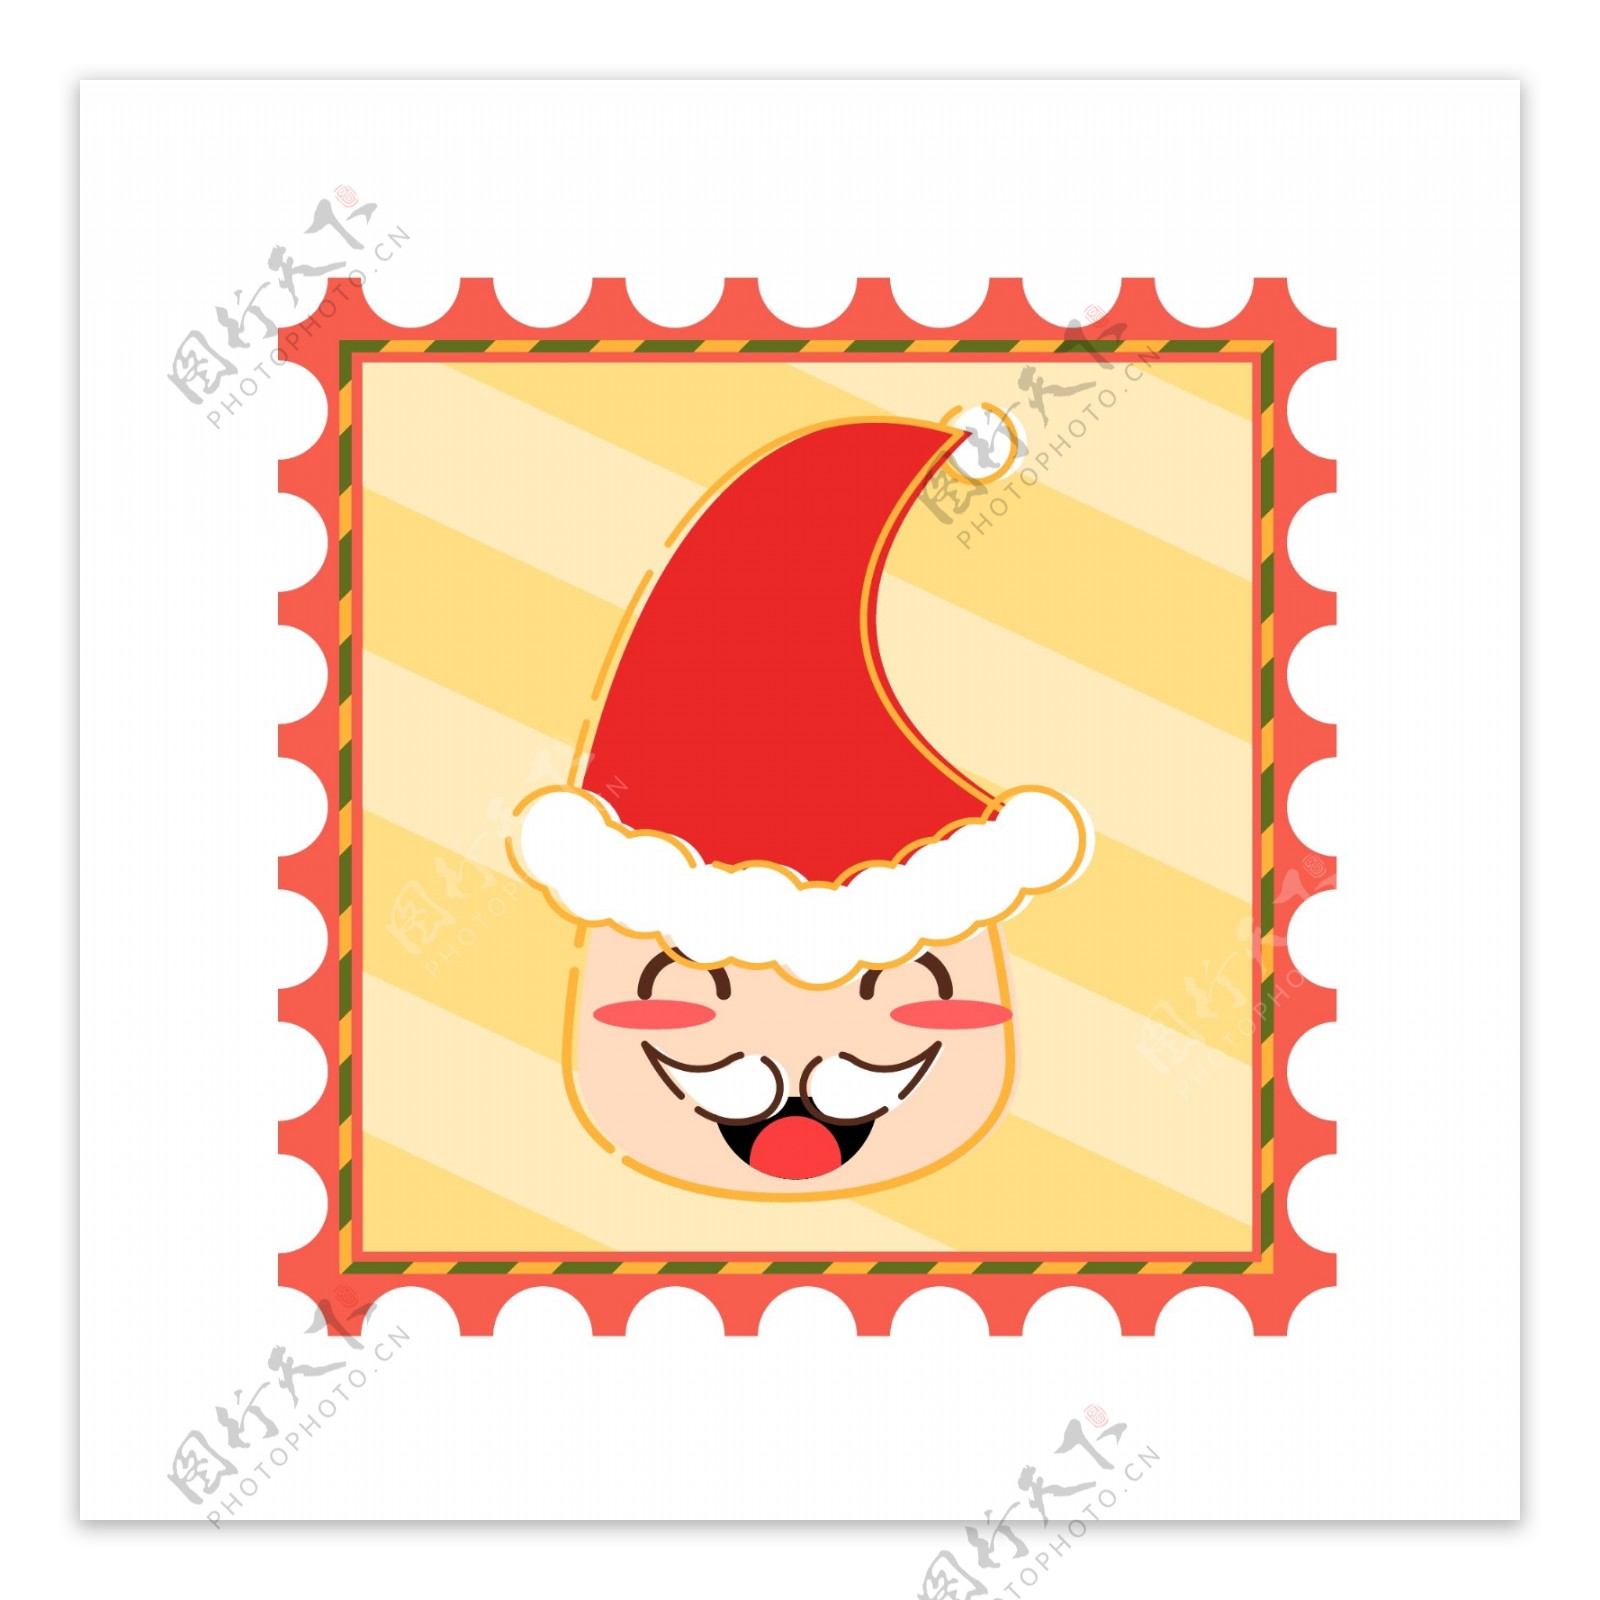 原创可爱可通圣诞老人圣诞邮票装饰元素